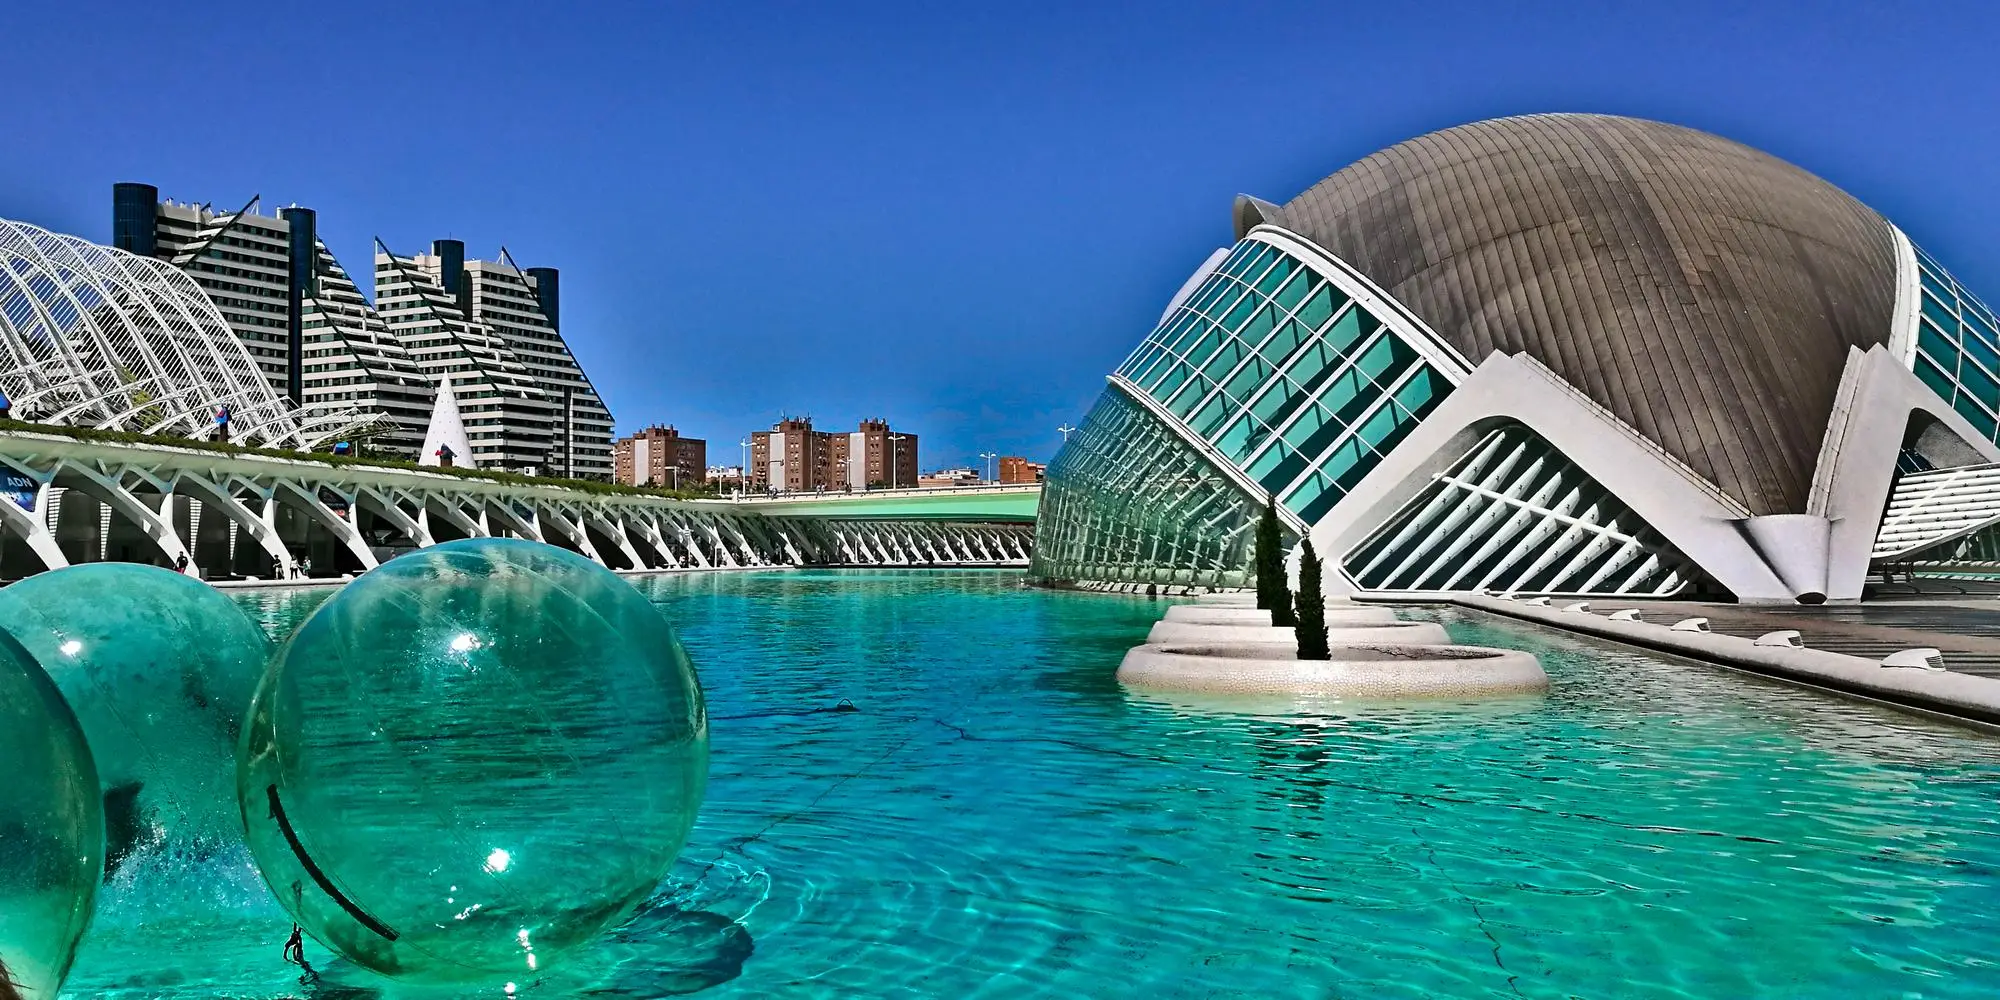 Cose da fare a Valencia - Gli edifici moderni della Città delle Arti e delle Scienze di Valencia